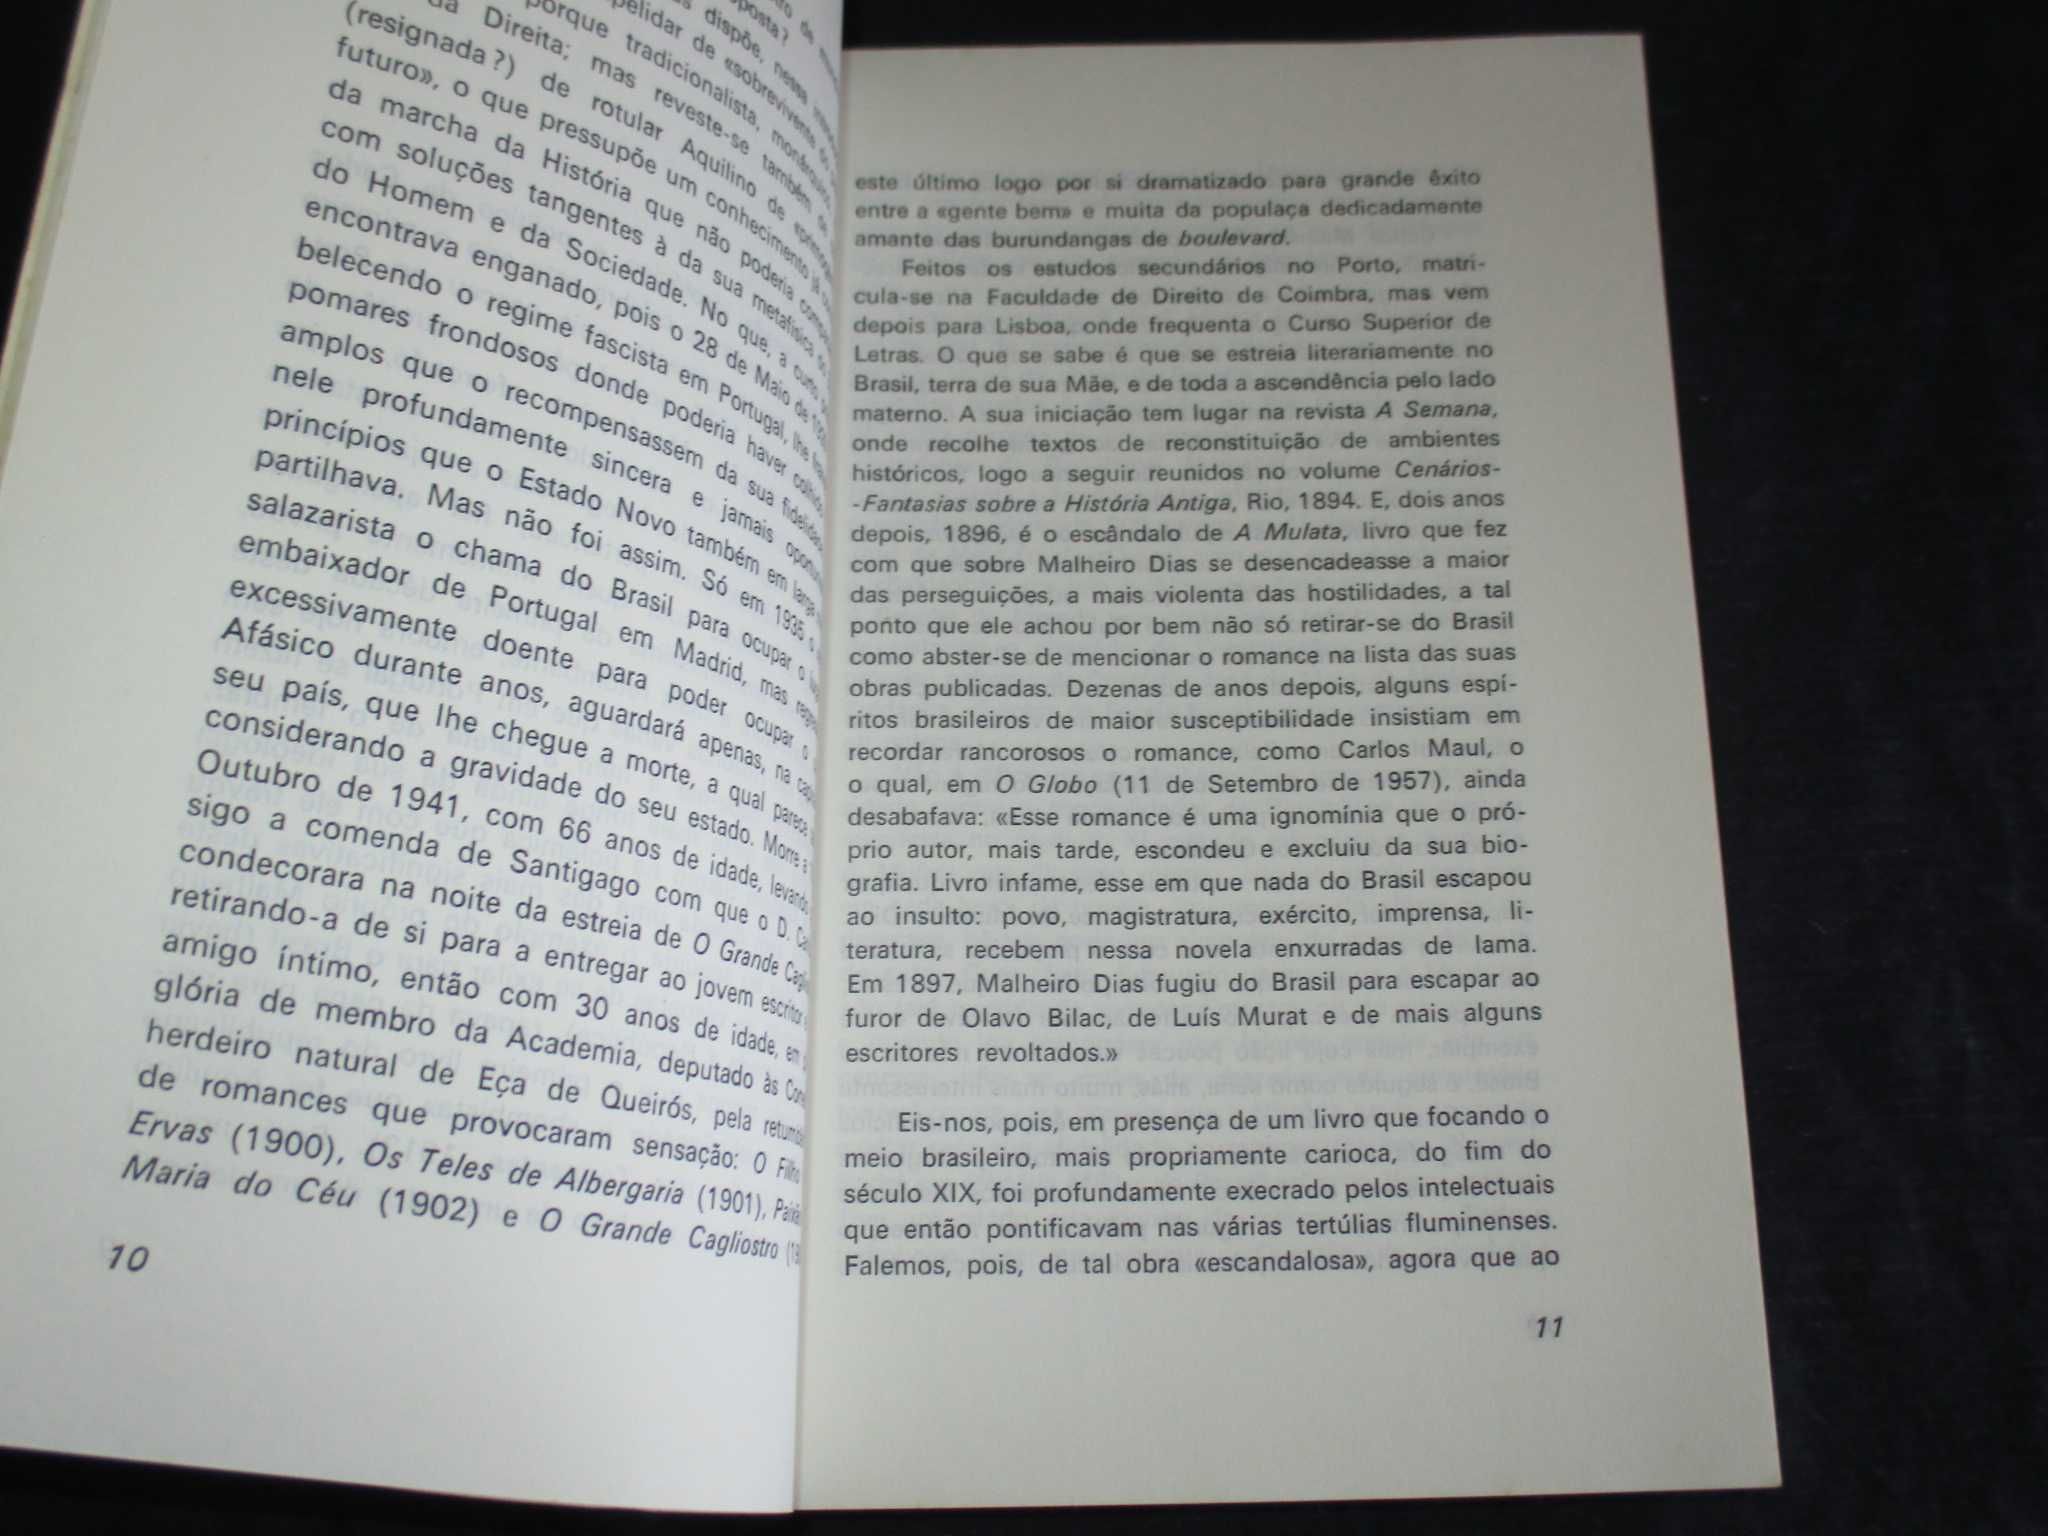 Livro A Mulata Carlos Malheiro Dias Edição Comemorativa 1975